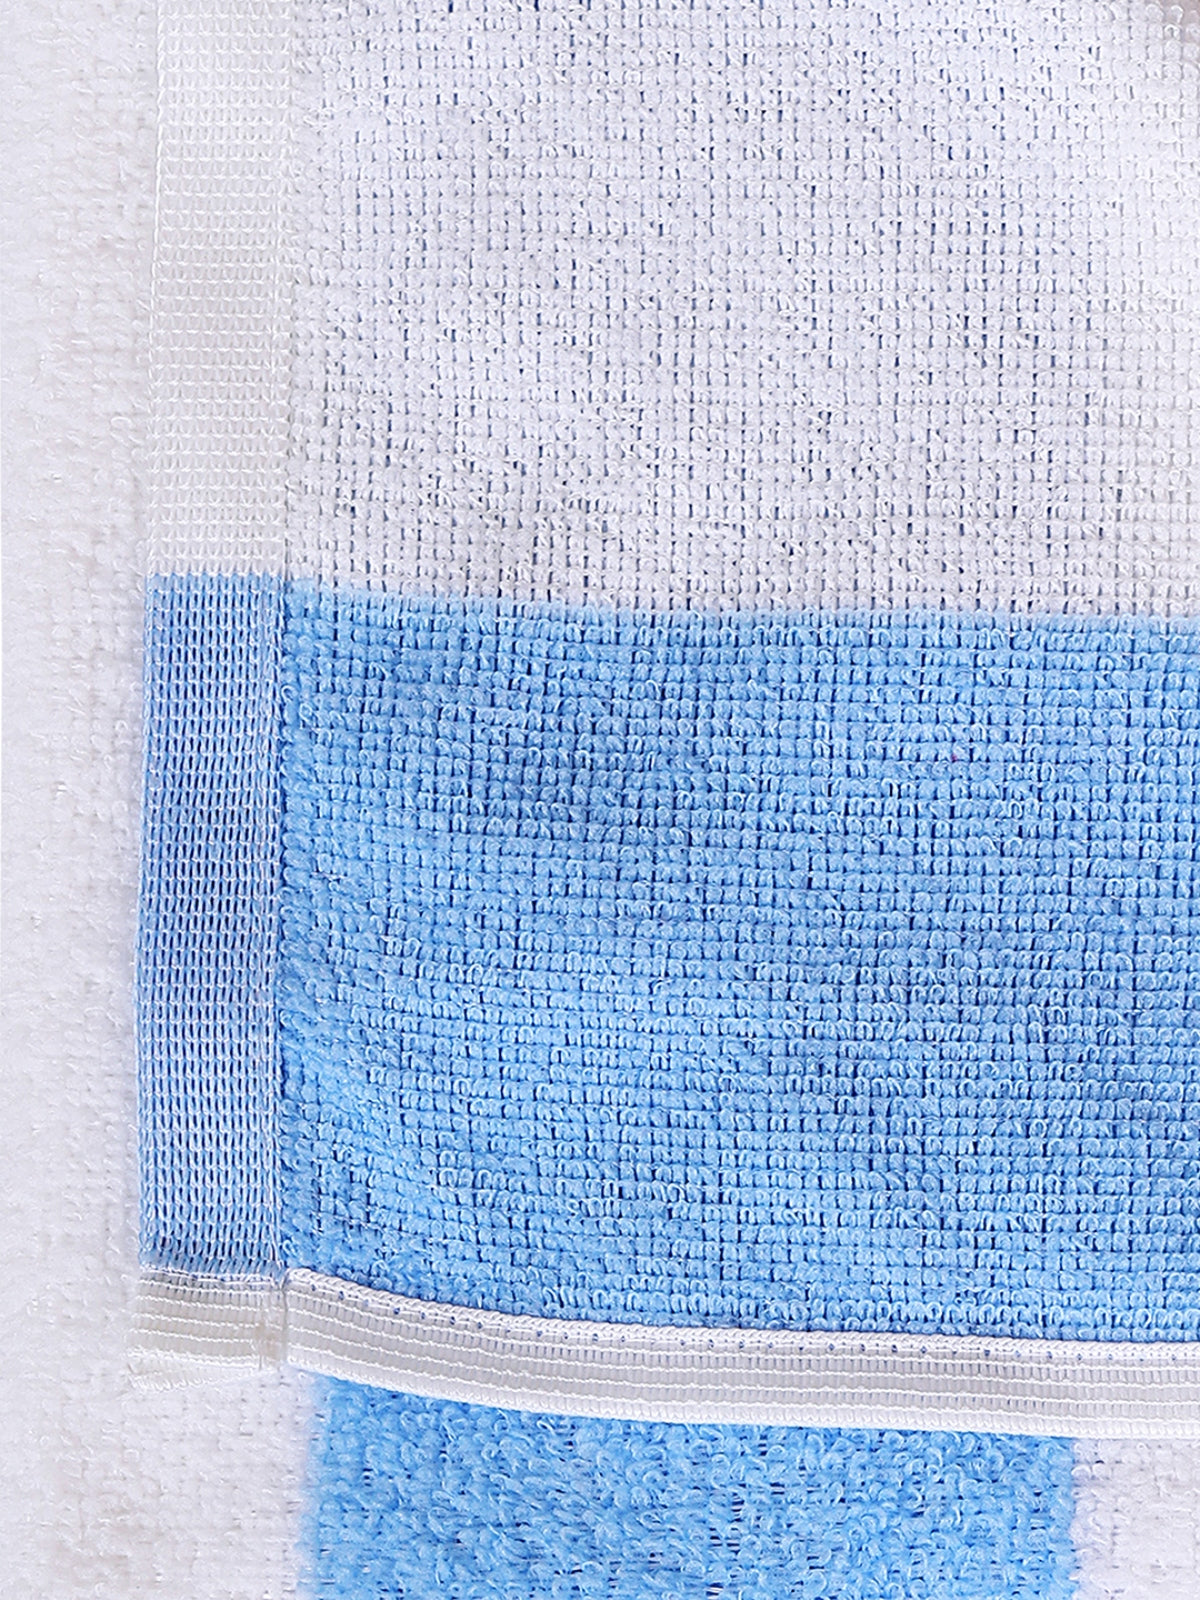 Blue Stripes Patterned Microfiber Towel